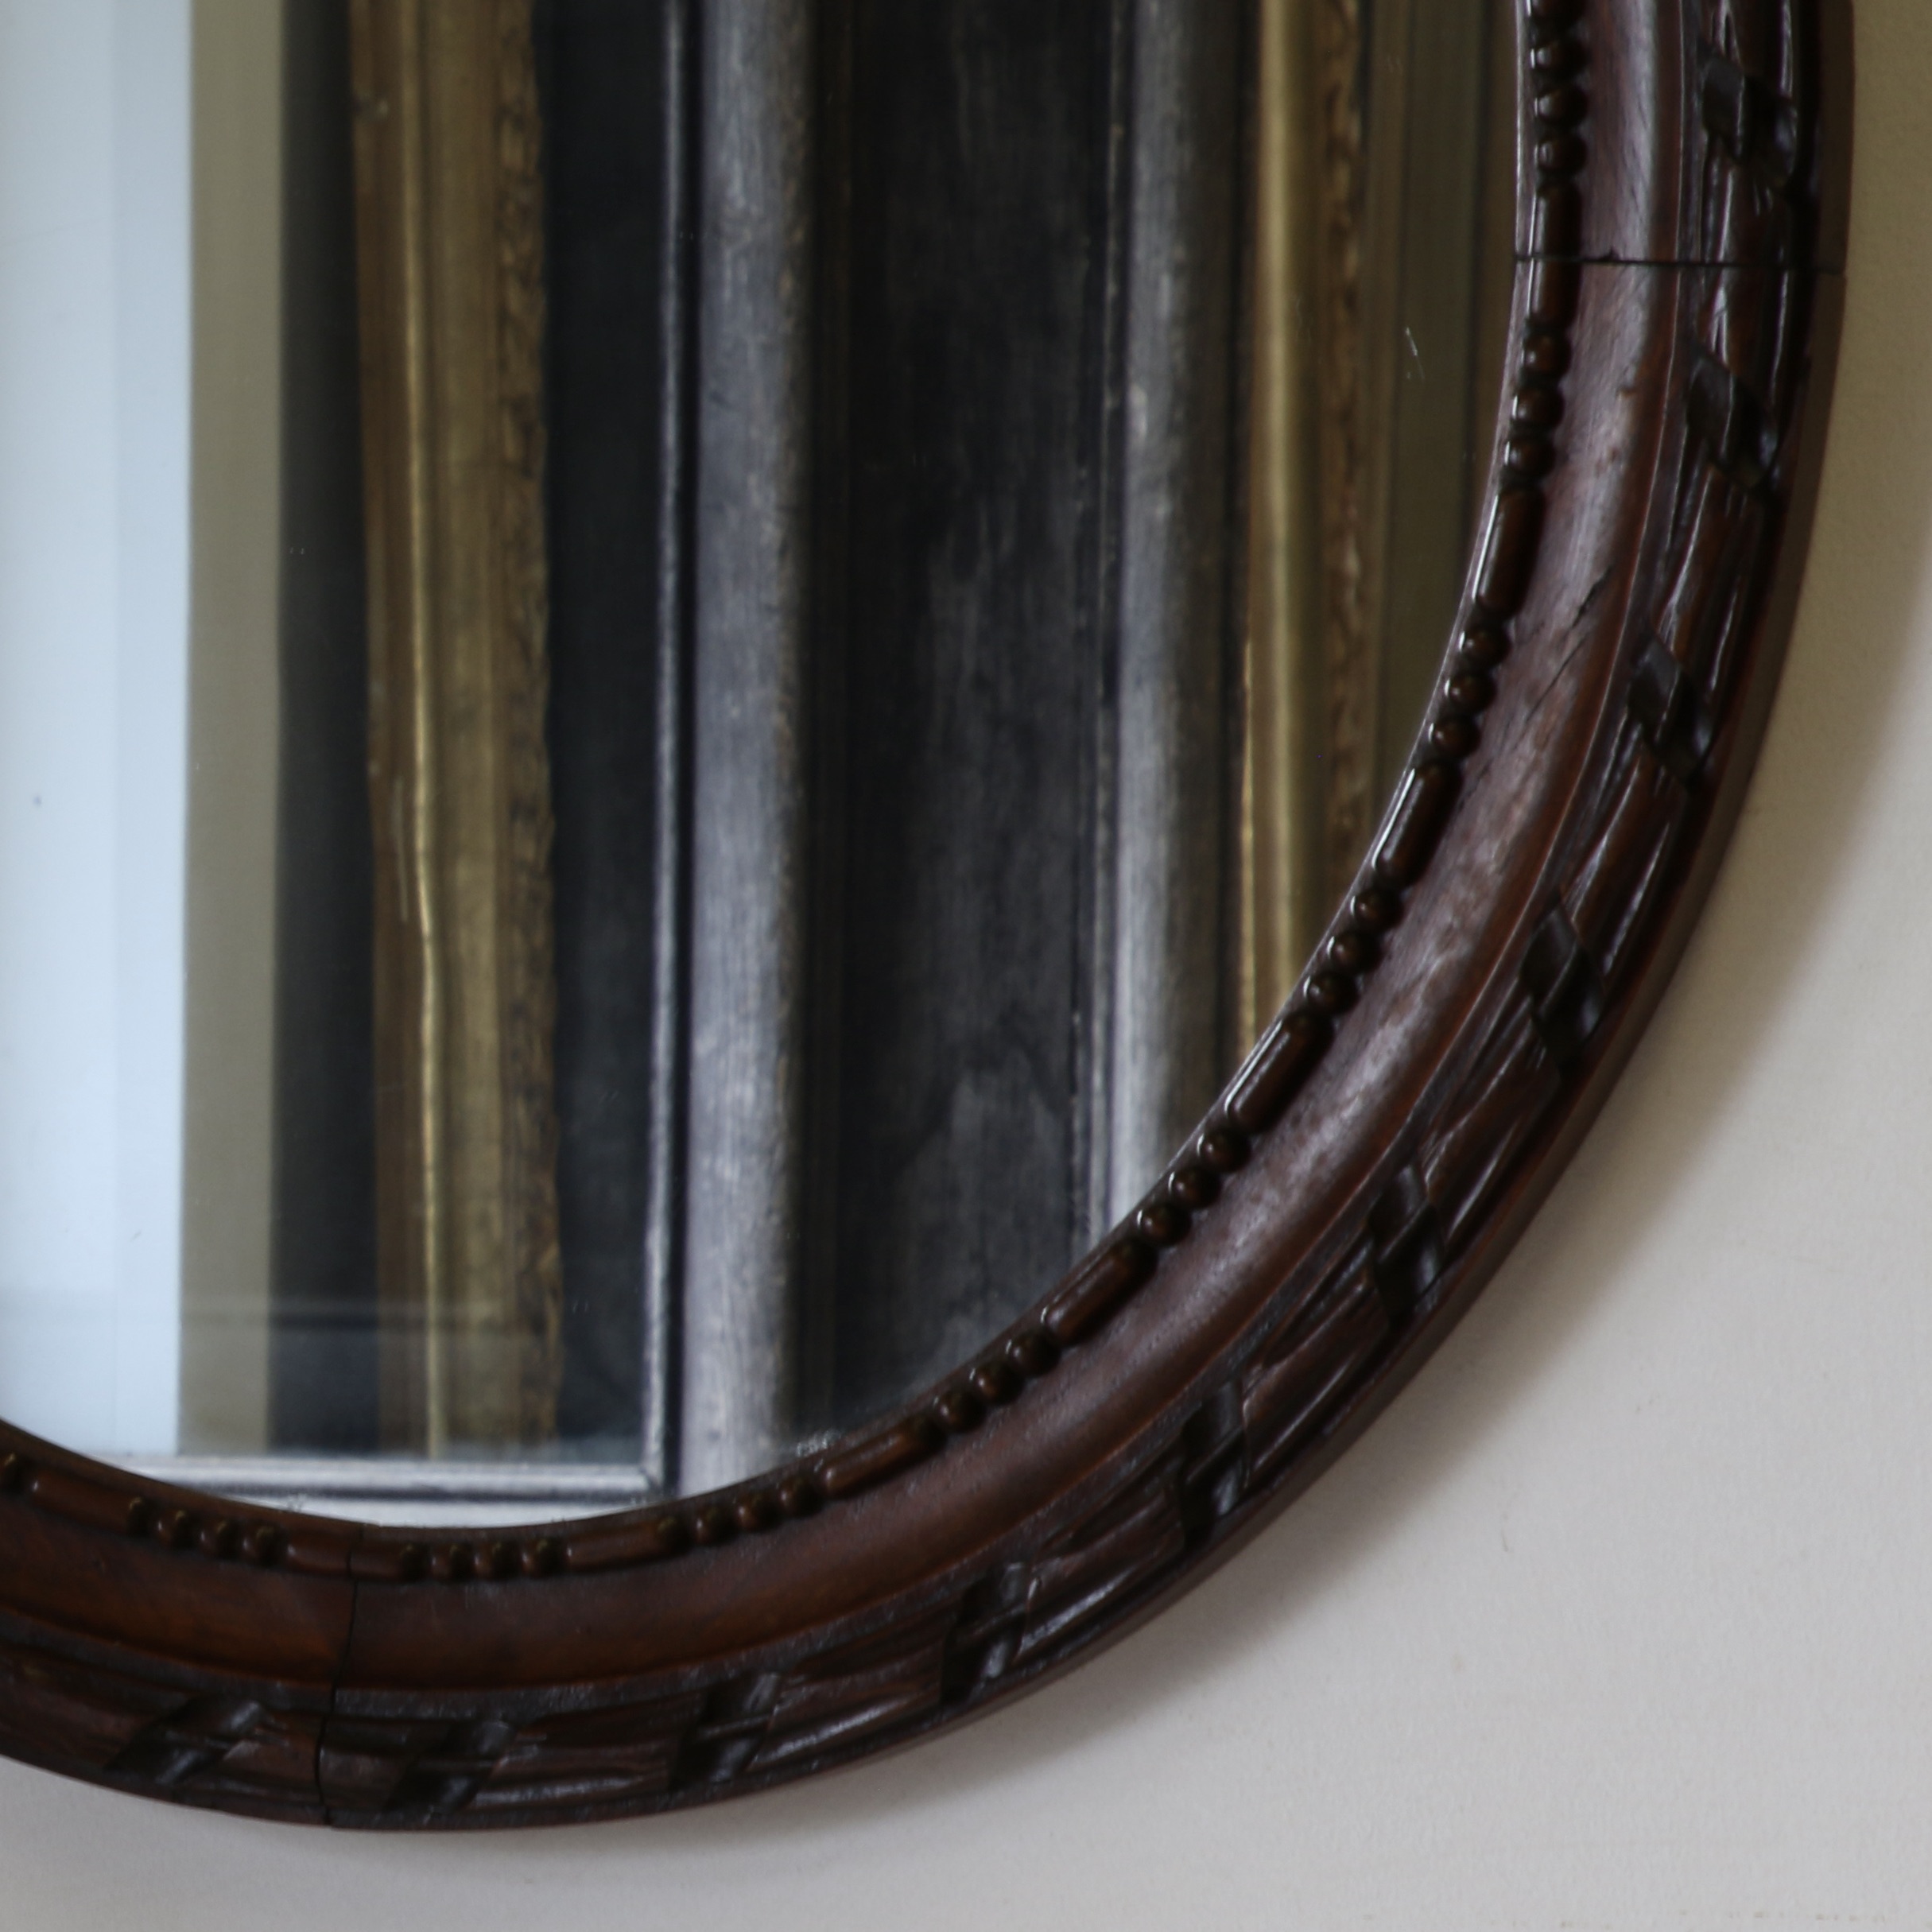 Oval Oak Mirror